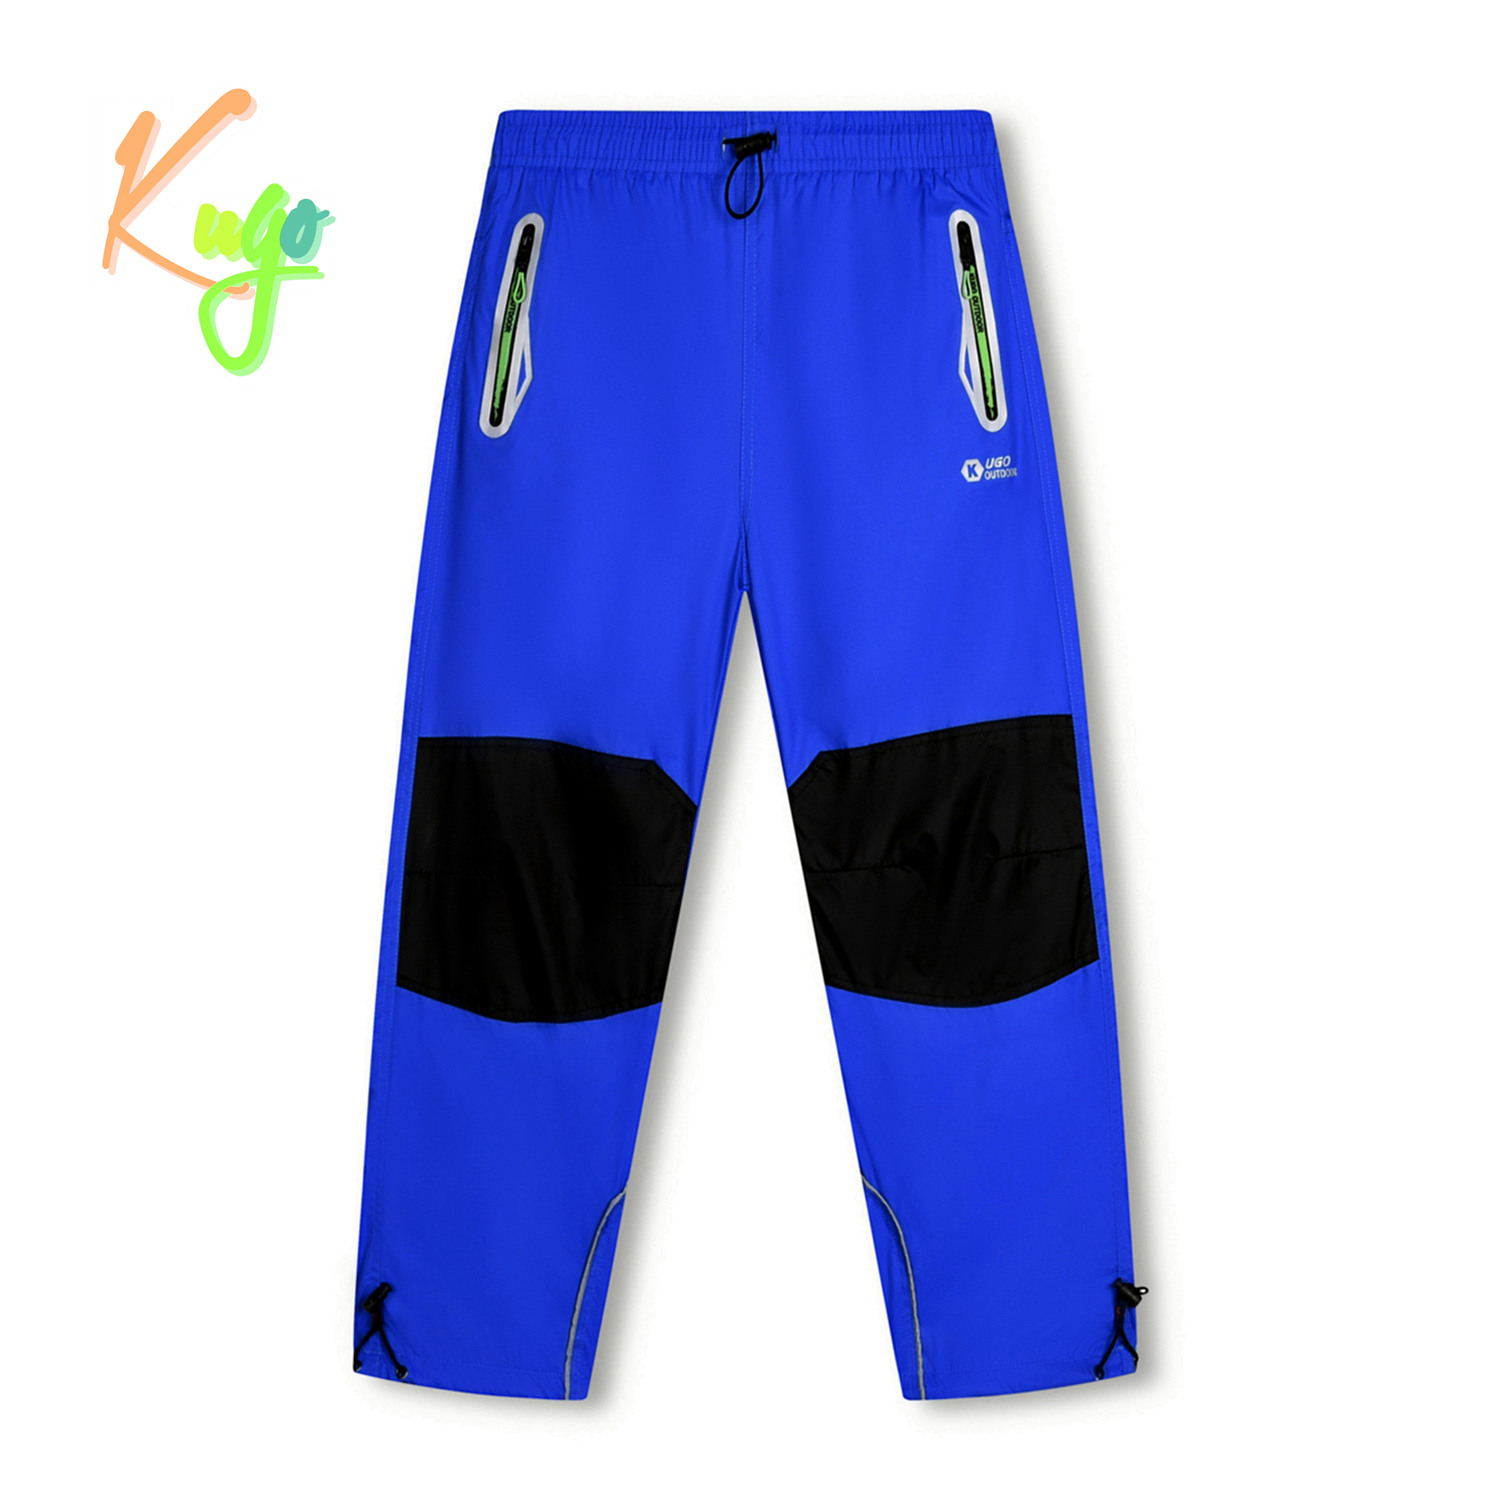 Chlapecké šusťákové kalhoty - KUGO SK7740, modrá Barva: Modrá, Velikost: 164